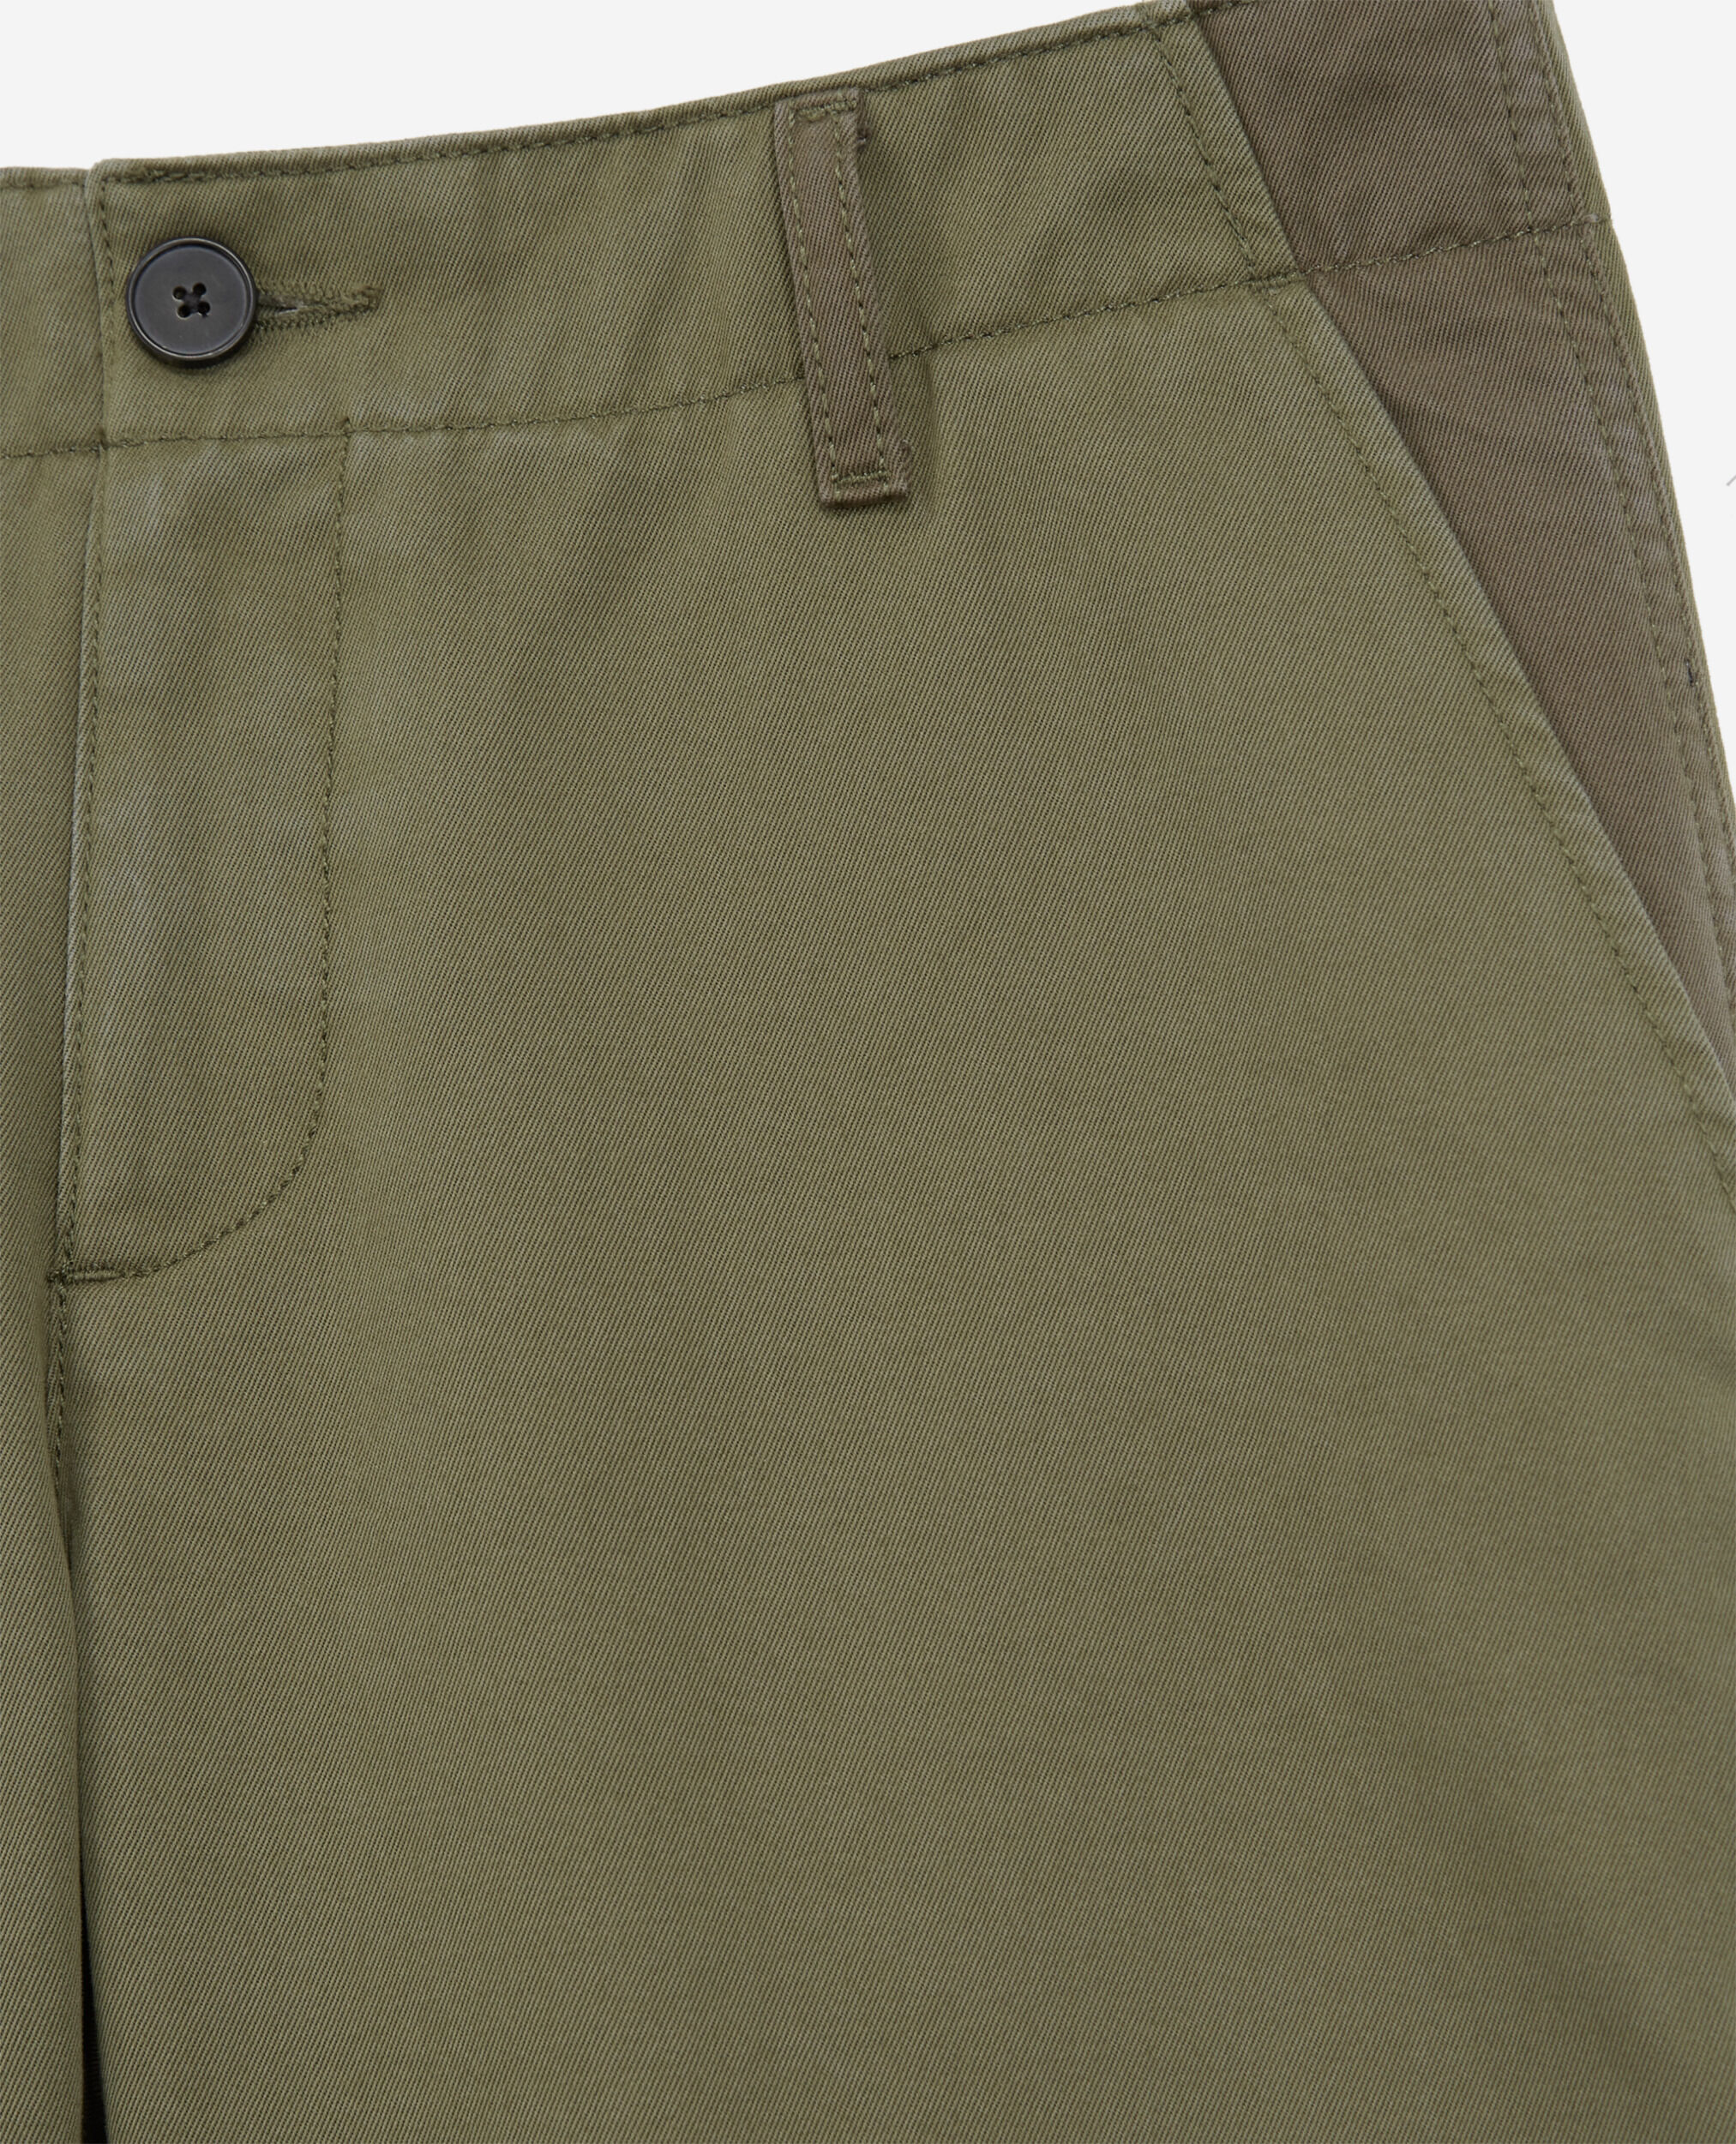 Pantalon droit patchwork kaki, OLIVE NIGHT, hi-res image number null